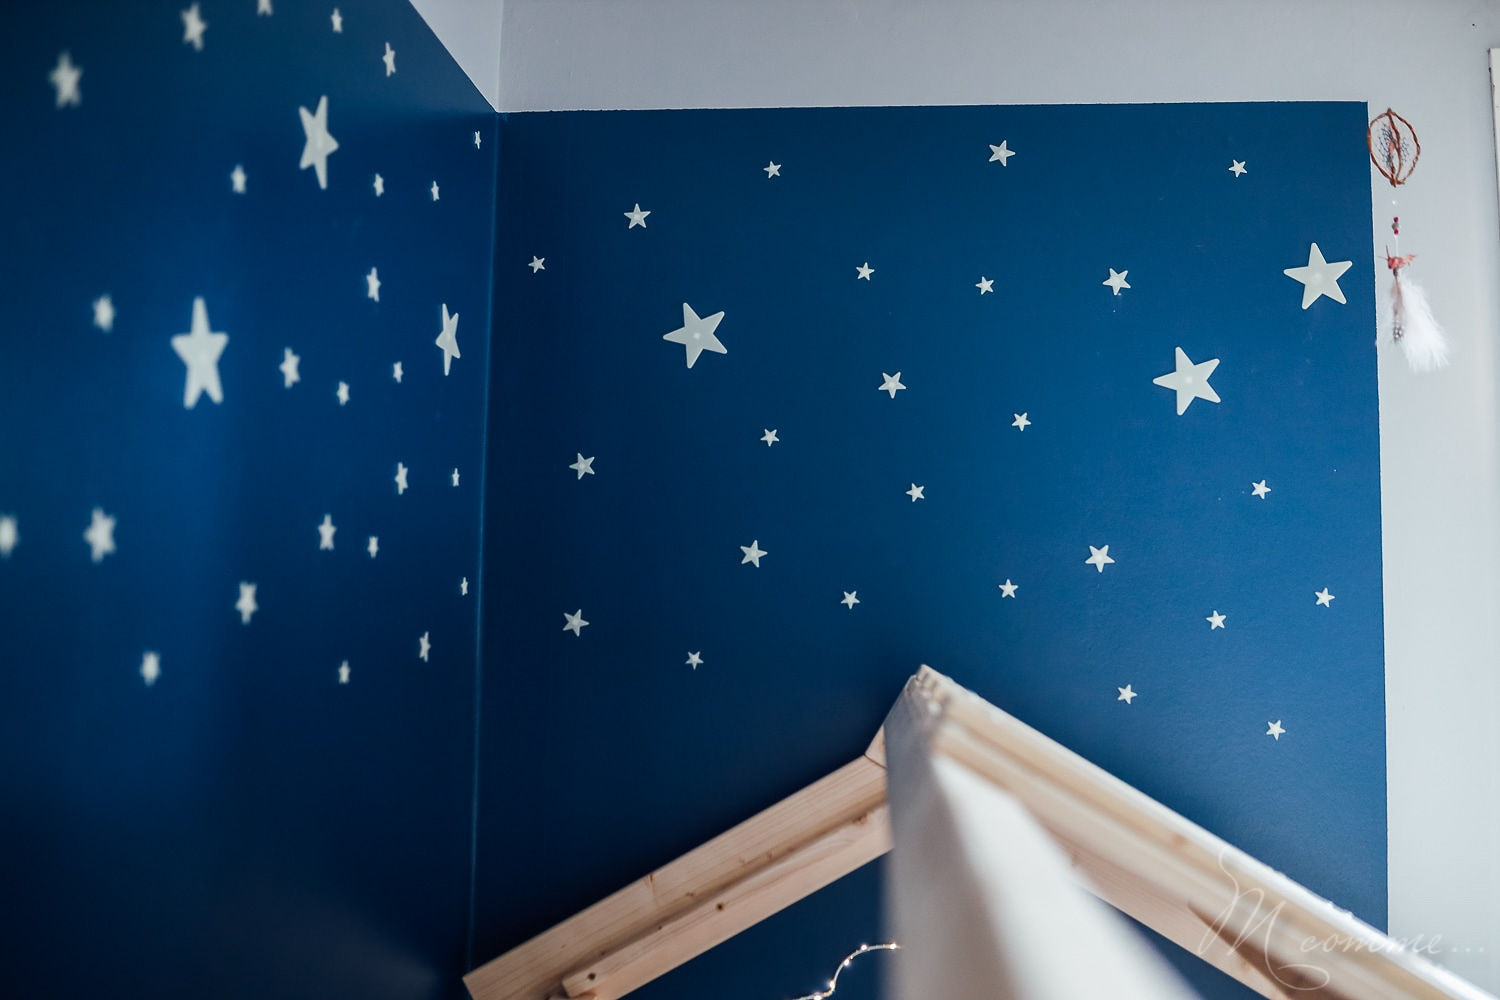 chambre montessori décoration étoiles phosphorescentes